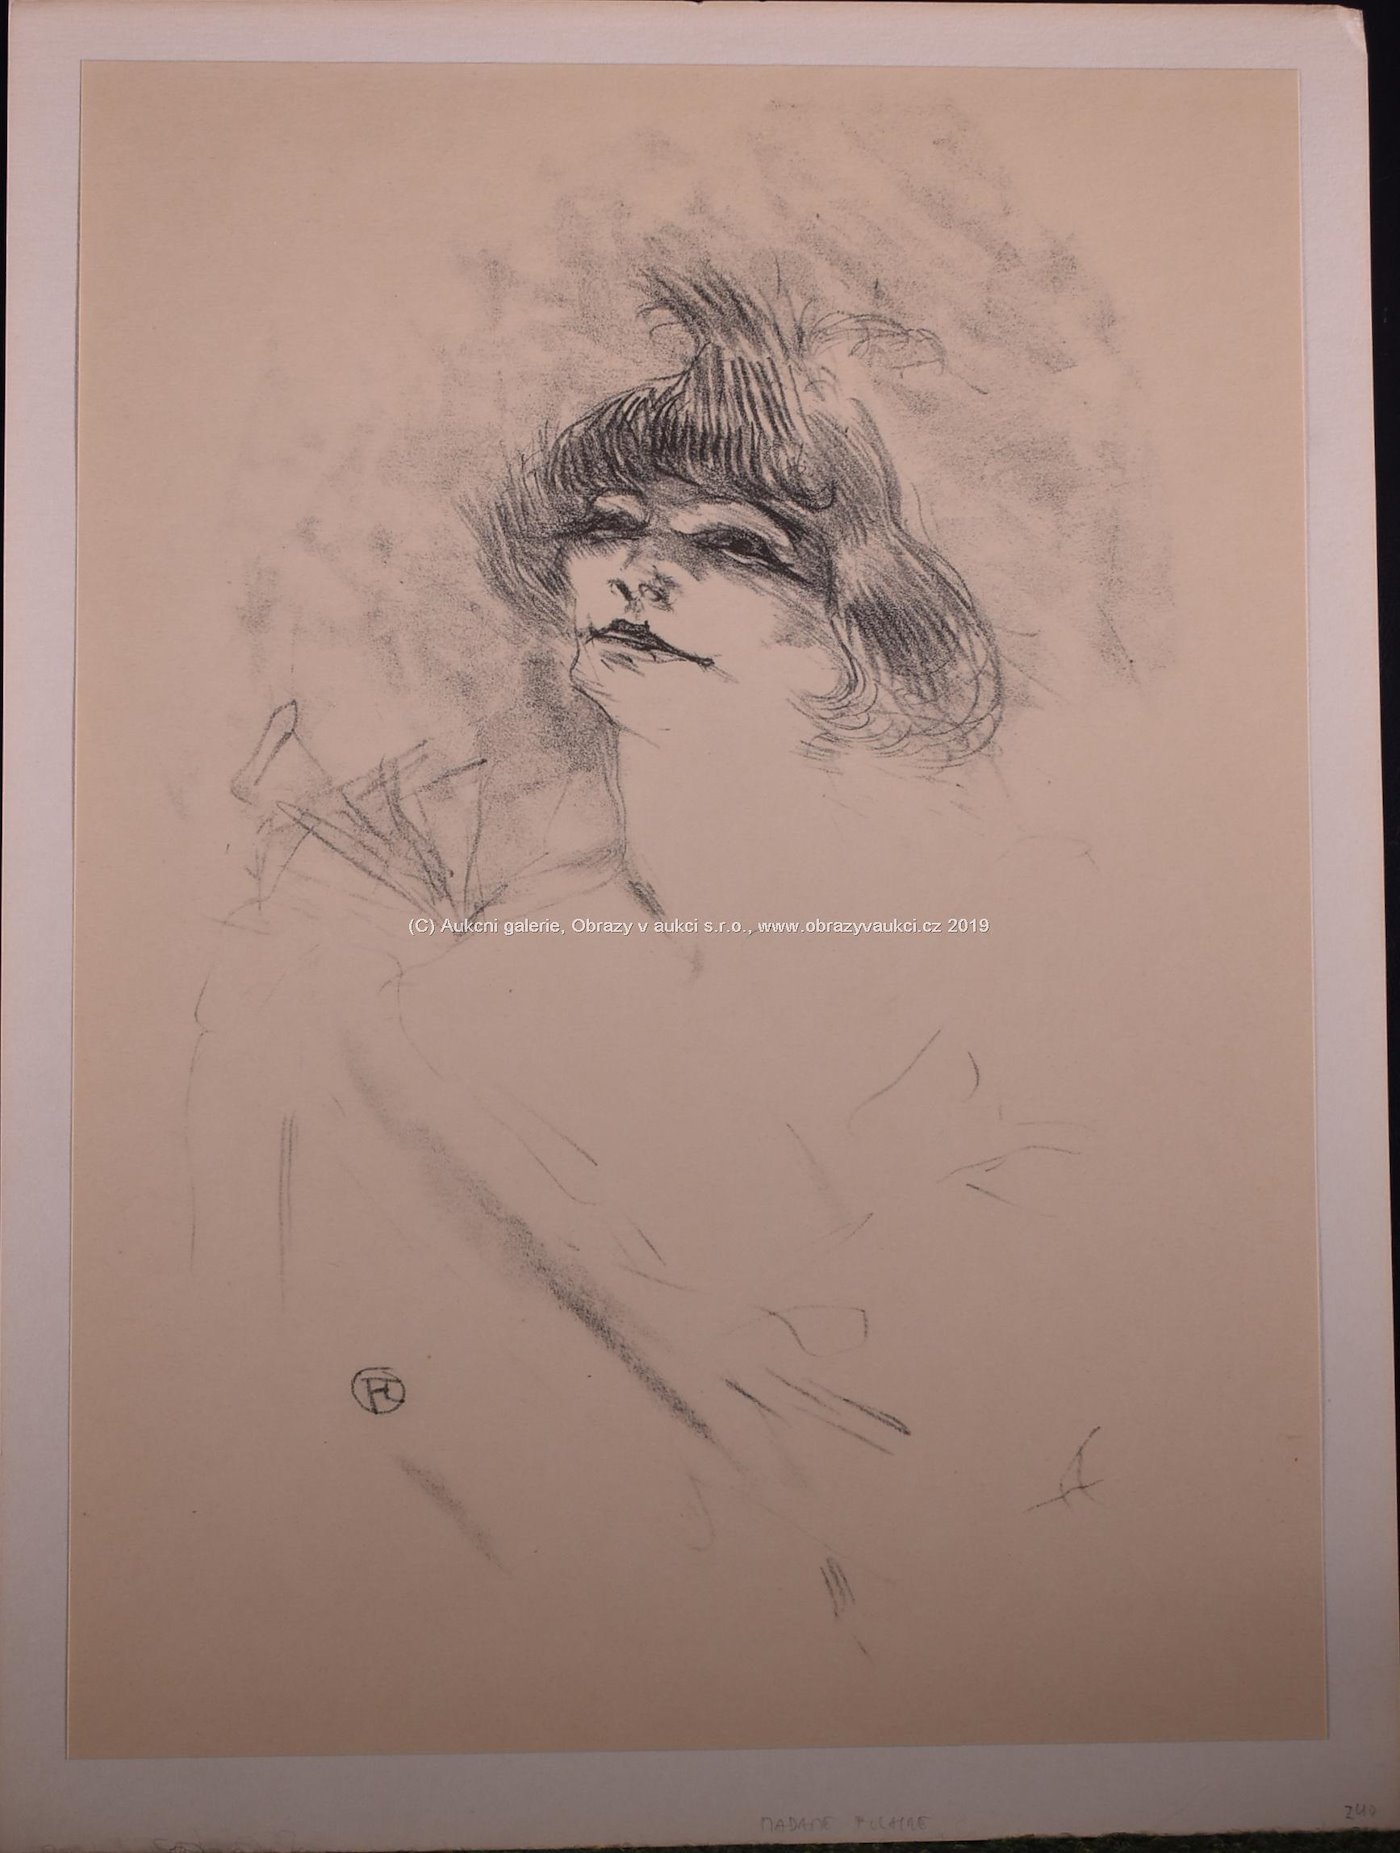 Henri de Toulouse-Lautrec - Madame Polaire (1897-97), opus 240